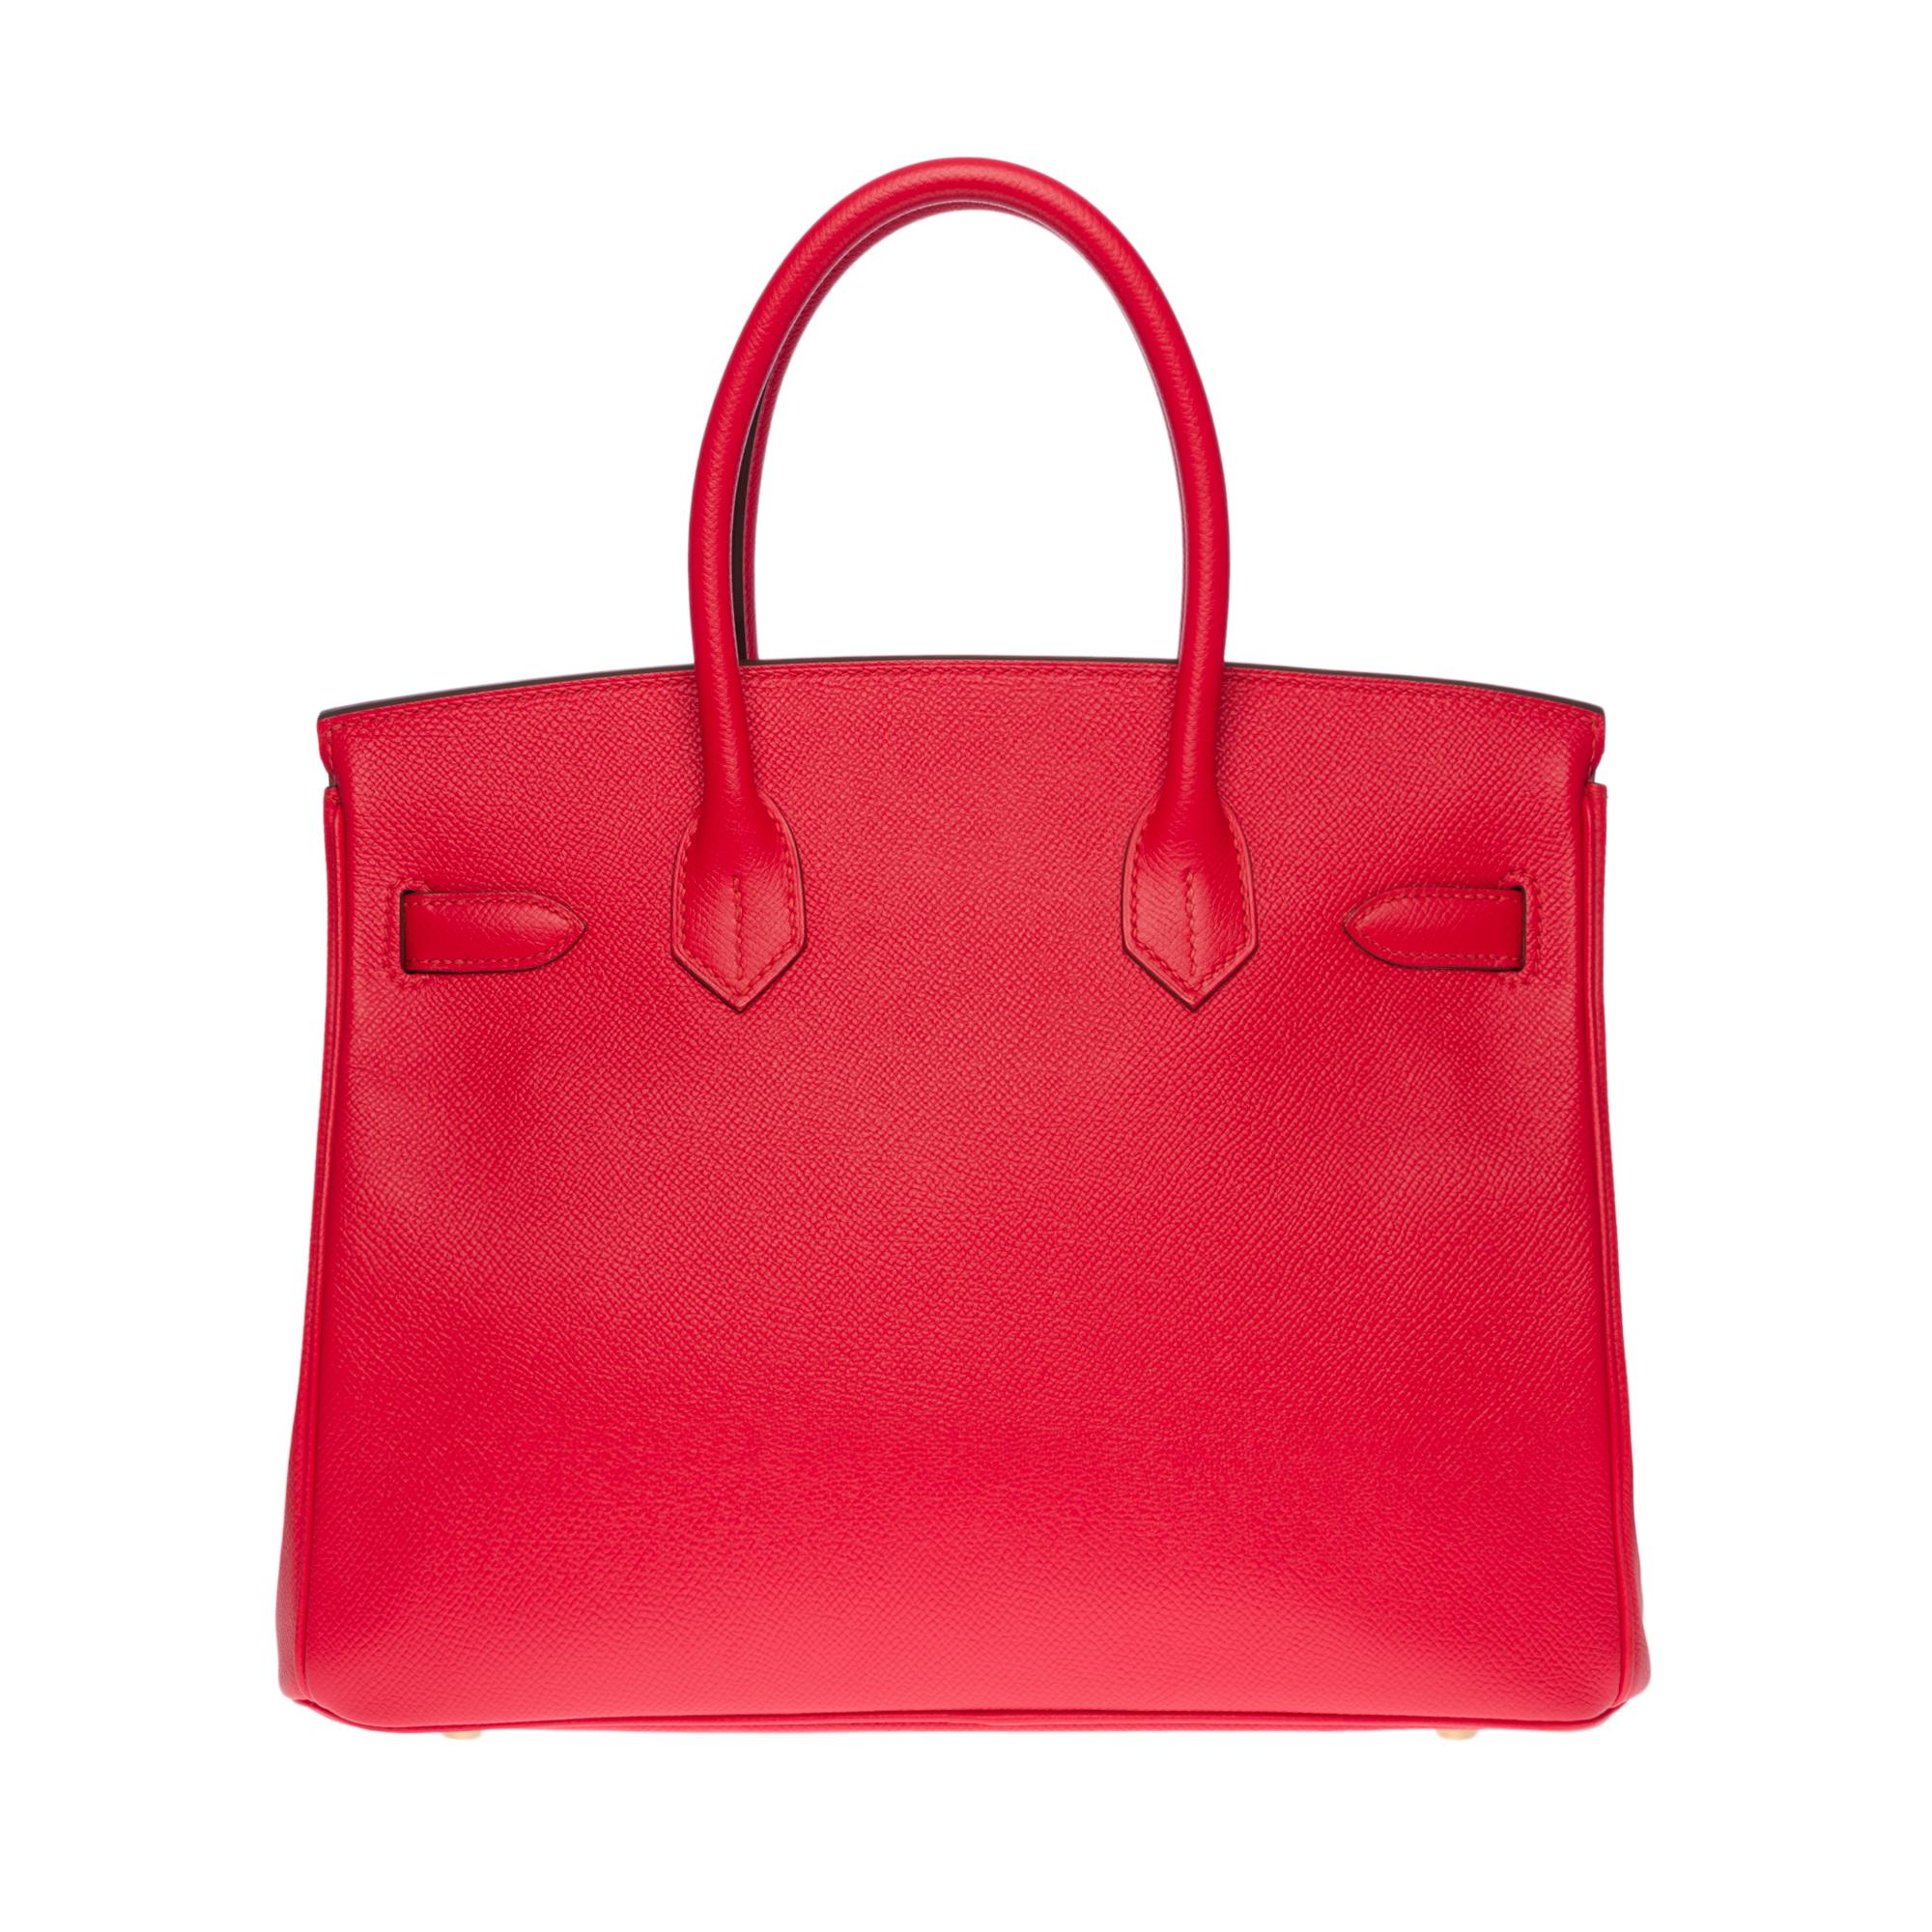 Exquisite und helle Hermes Birkin 30 Handtasche aus Epsom Red Heart Leder, vergoldete Metallbeschläge, doppelter Griff aus rotem Leder, der ein Tragen in der Hand ermöglicht

Klappenverschluss
Rotes Lederfutter, eine Tasche mit Reißverschluss, eine